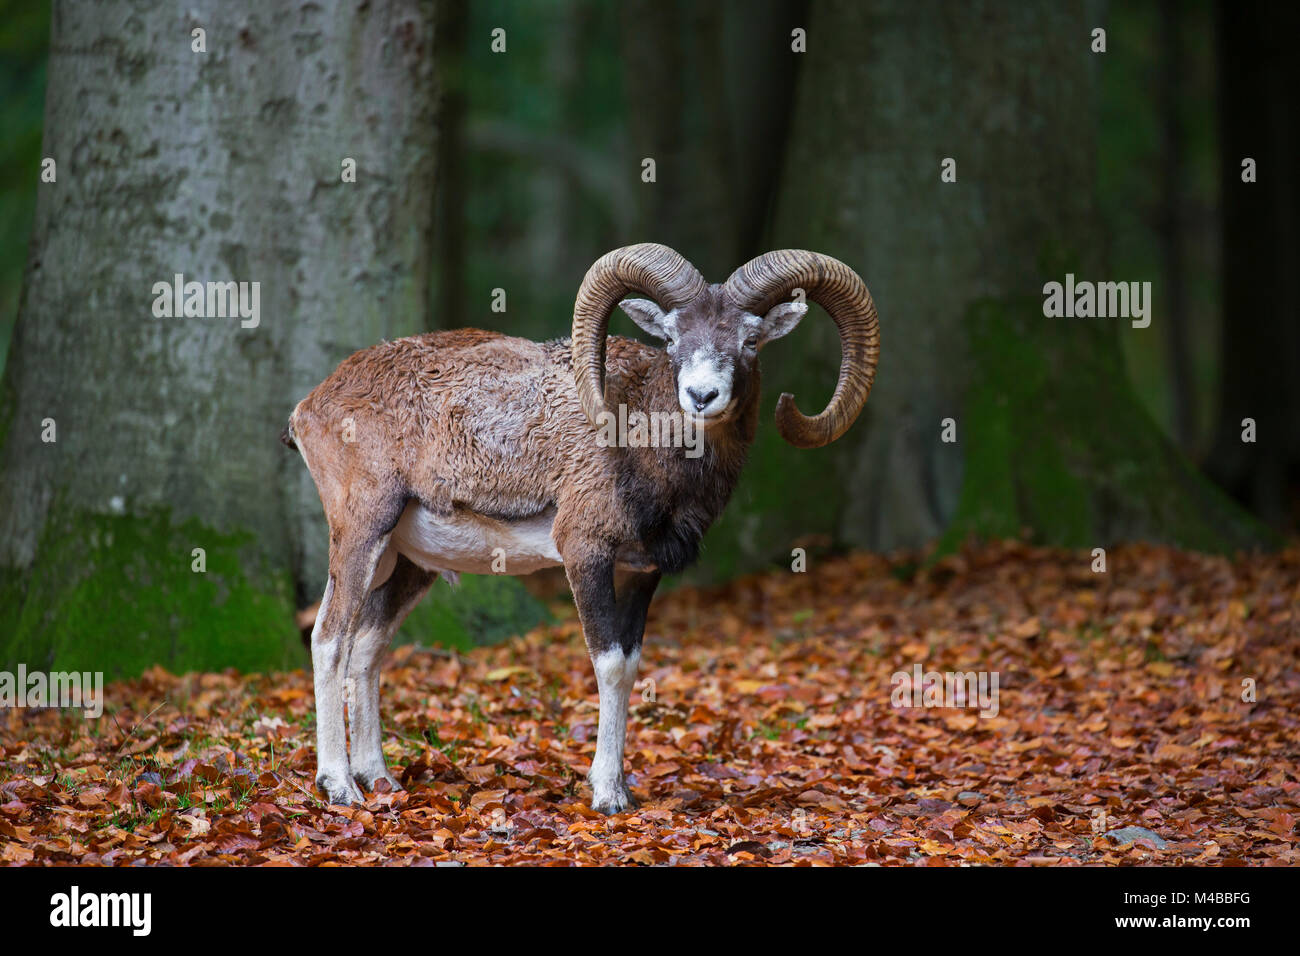 Mouflon (Ovis gmelini européenne / Ovis ammon musimon / Ovis orientalis musimon) ram avec grandes cornes en forêt en automne Banque D'Images